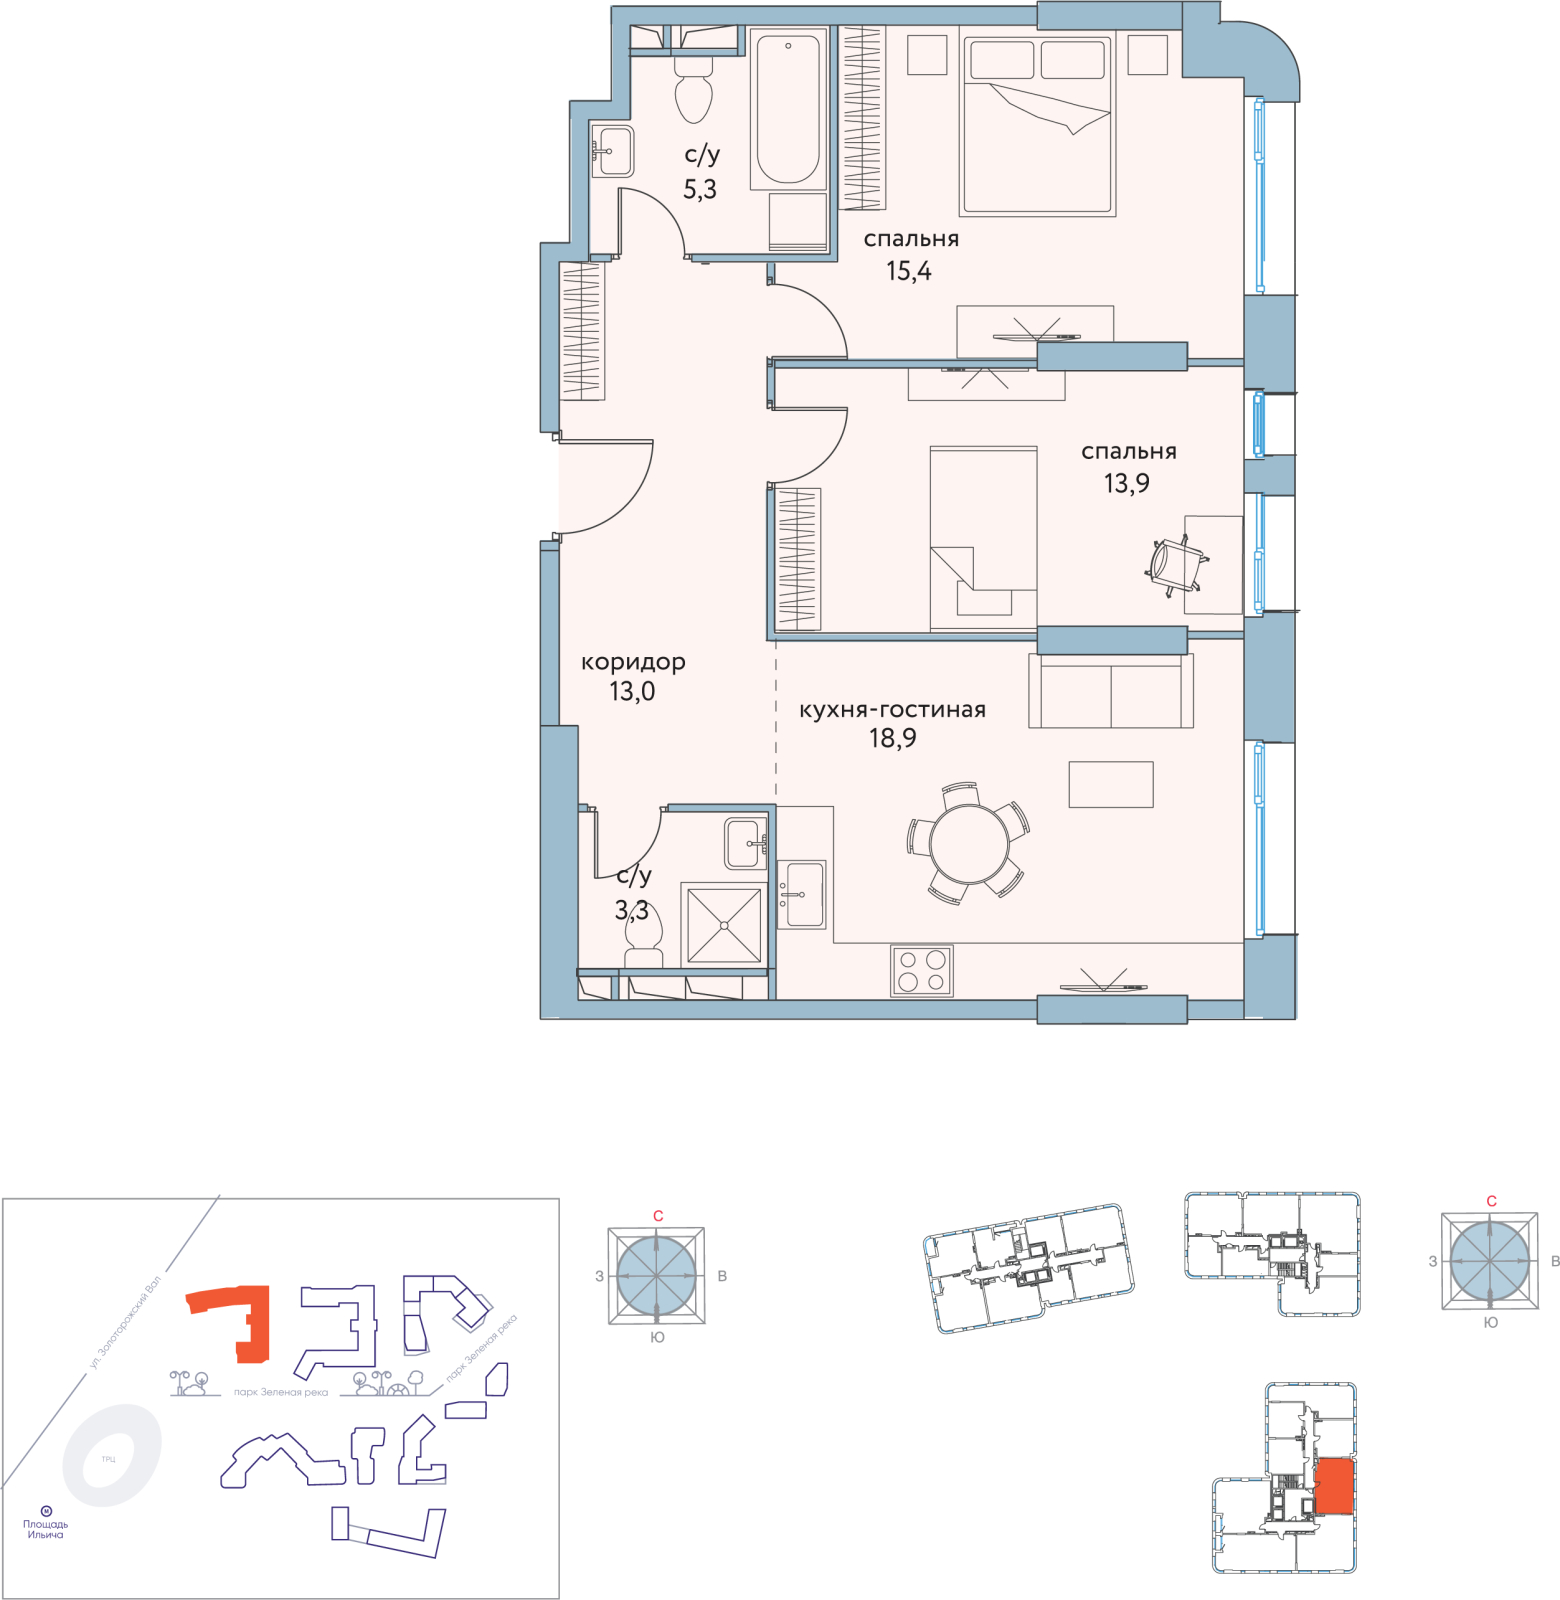 2-комнатная квартира в ЖК Триколор на 55 этаже в 1 секции. Дом сдан.